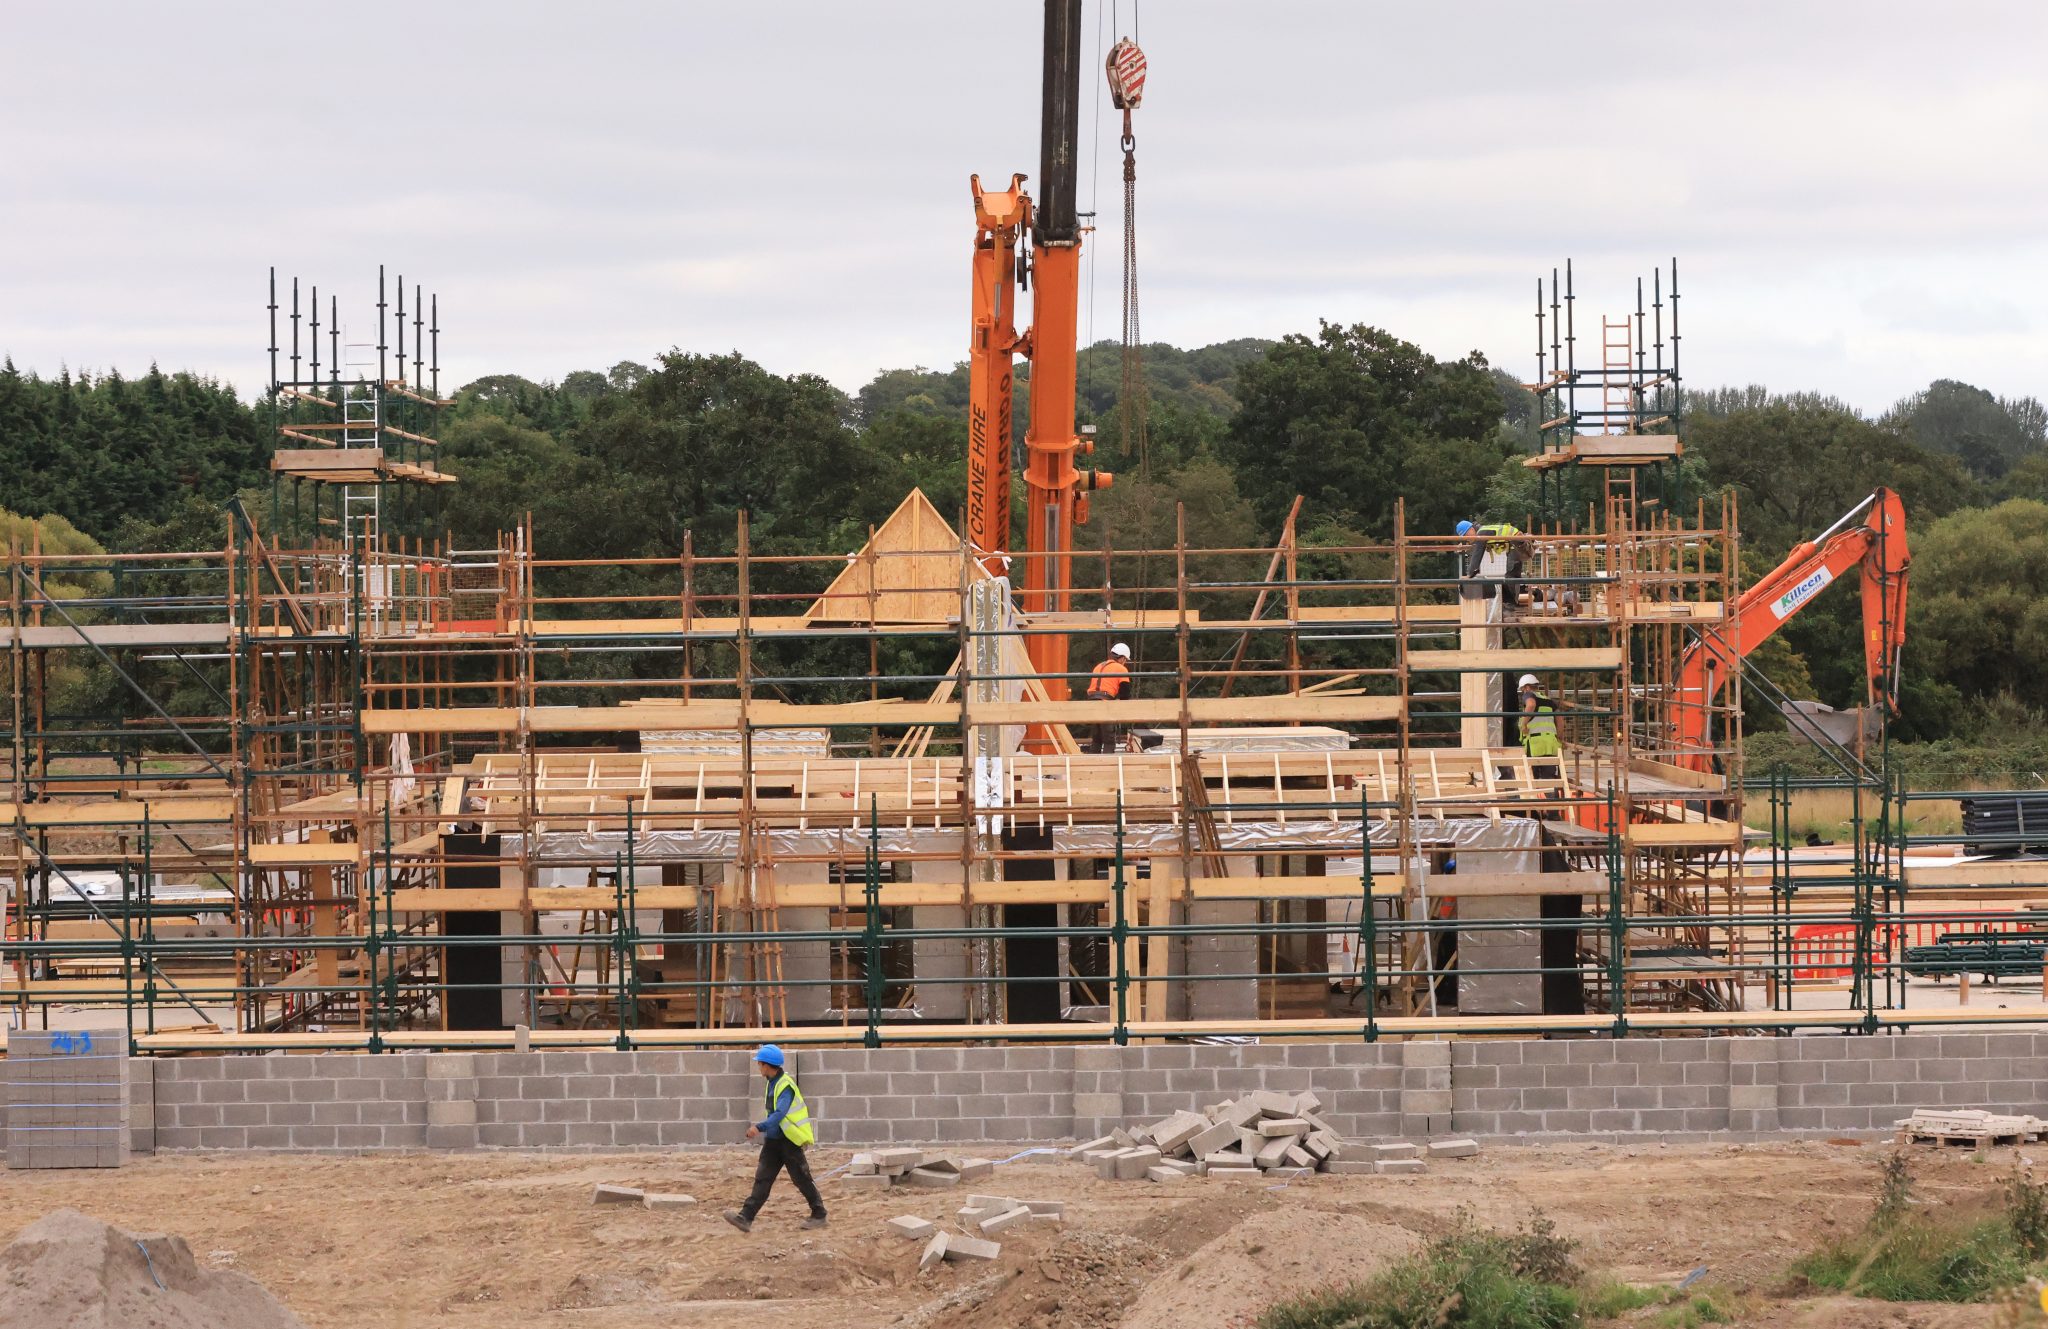 A development in Newbridge, Co Kildare is seen in September 2021.